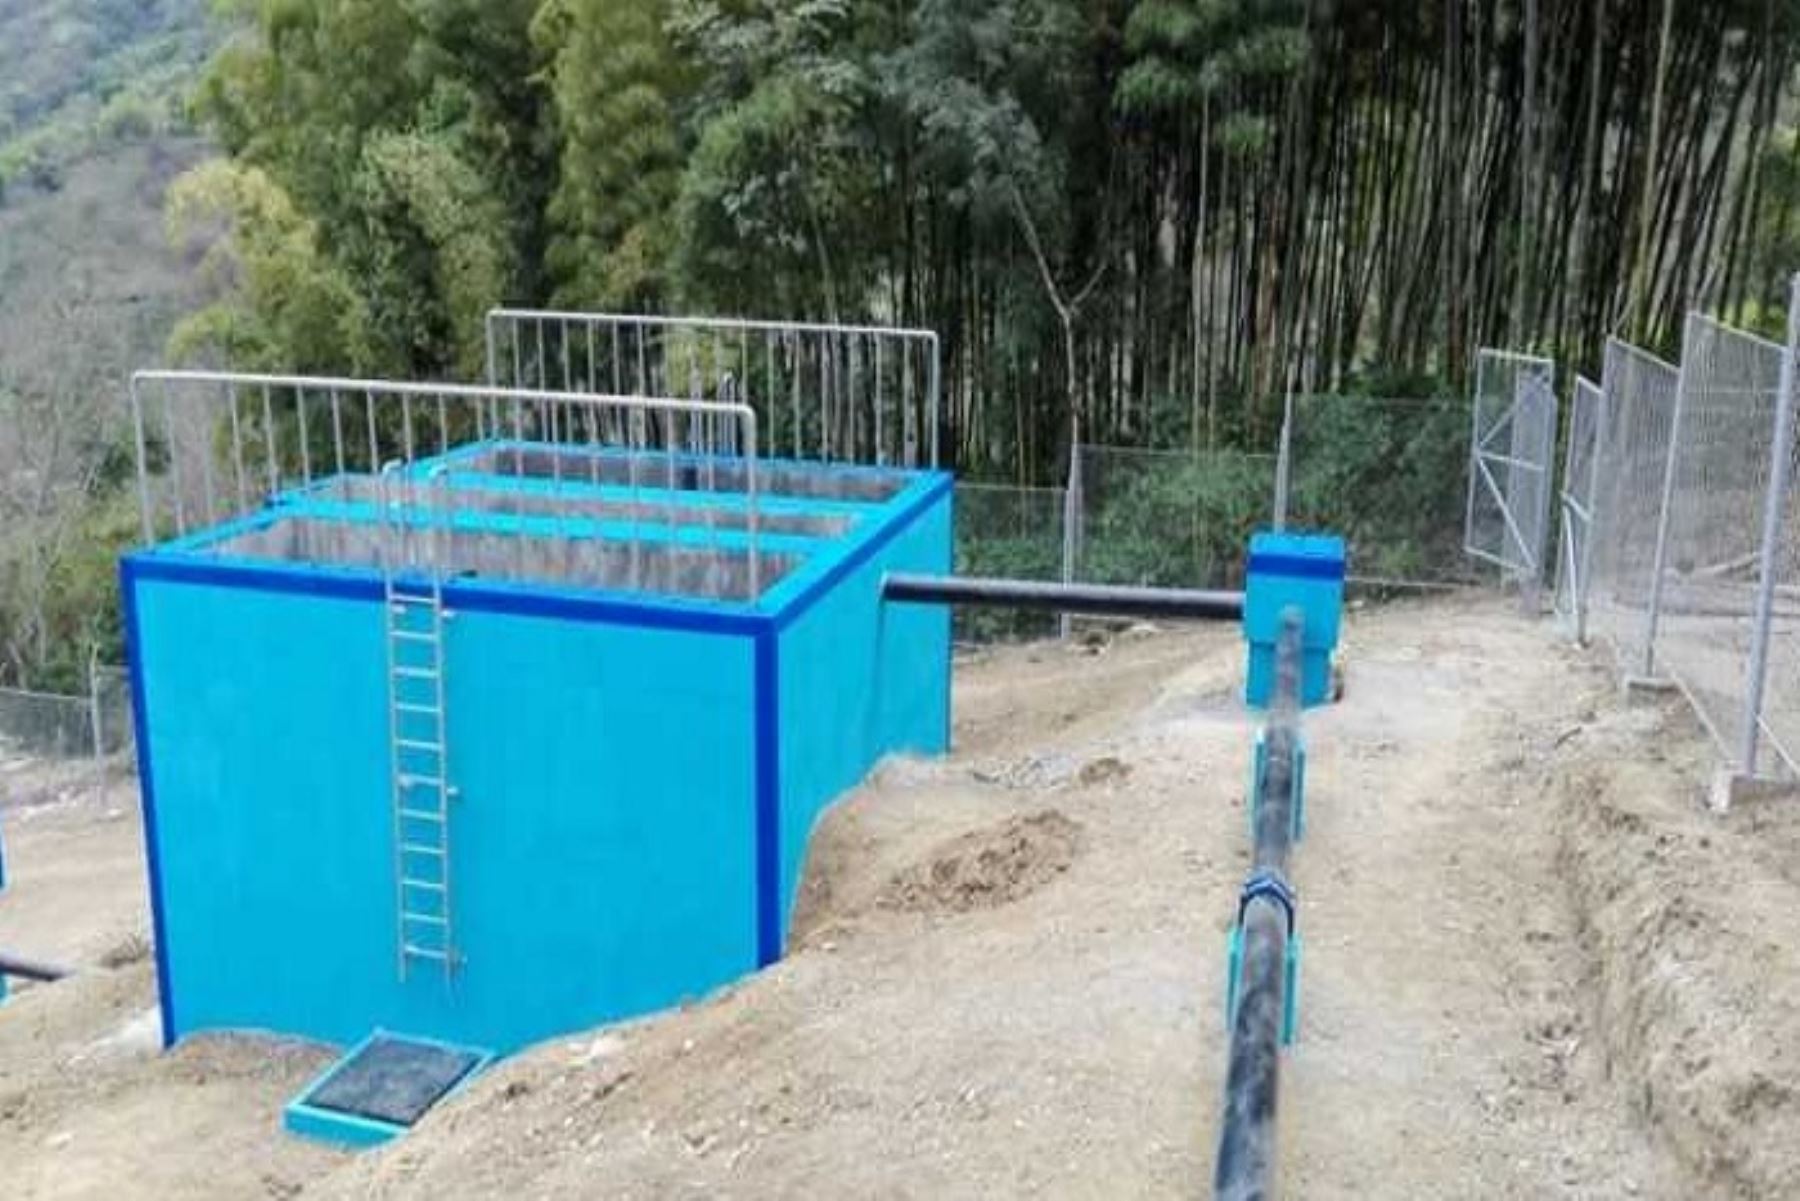 Contraloría General identificó tres riesgos en obra de mejoramiento del servicio de agua potable e instalación de alcantarillado de la localidad de Tamboya, en el distrito de Yamango, provincia piurana de Morropón, cuya inversión asciende a más de S/ 3 millones.